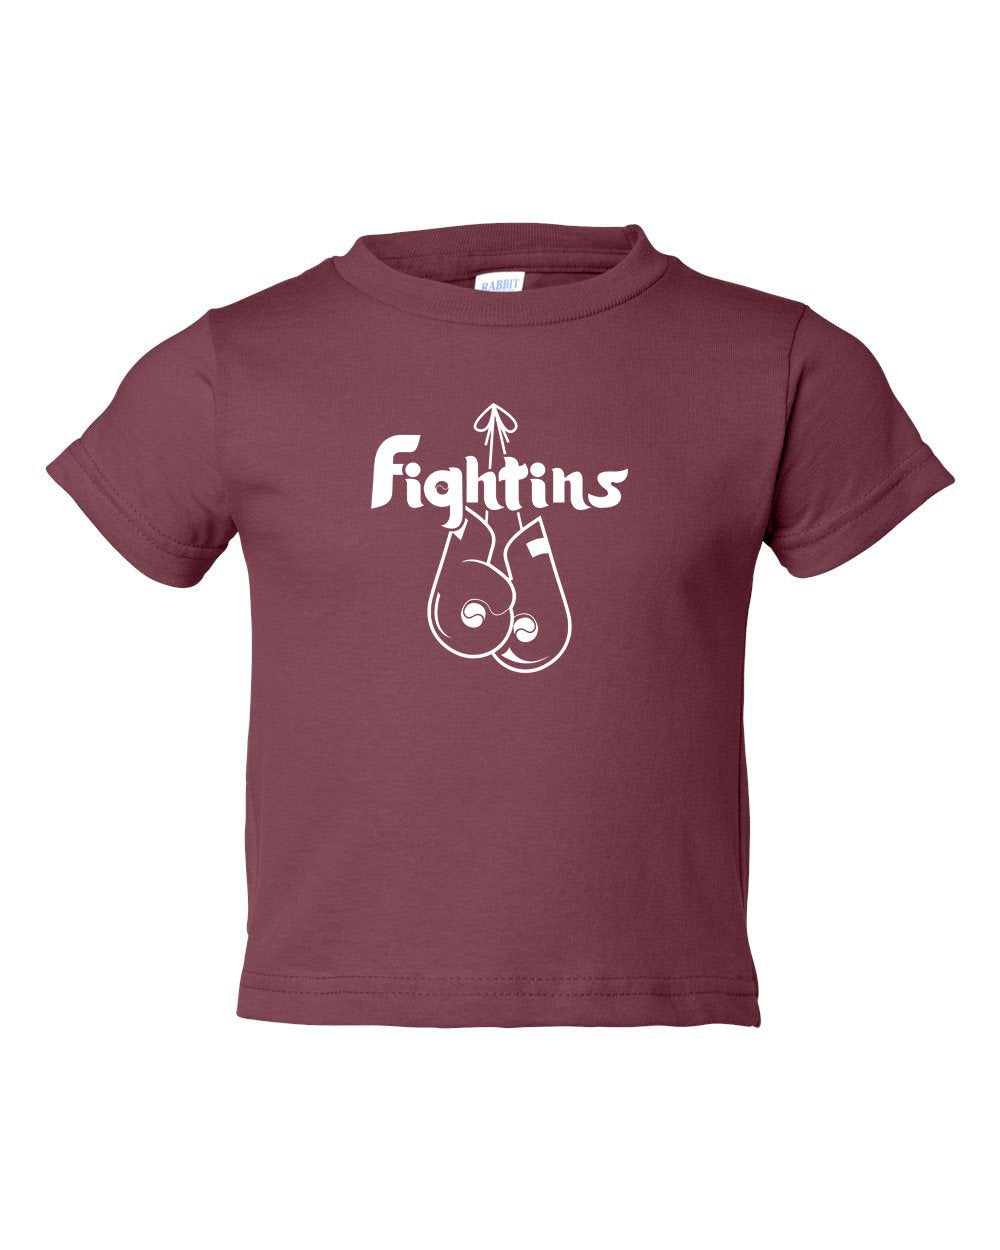 Fightins Boxing TODDLER T-Shirt